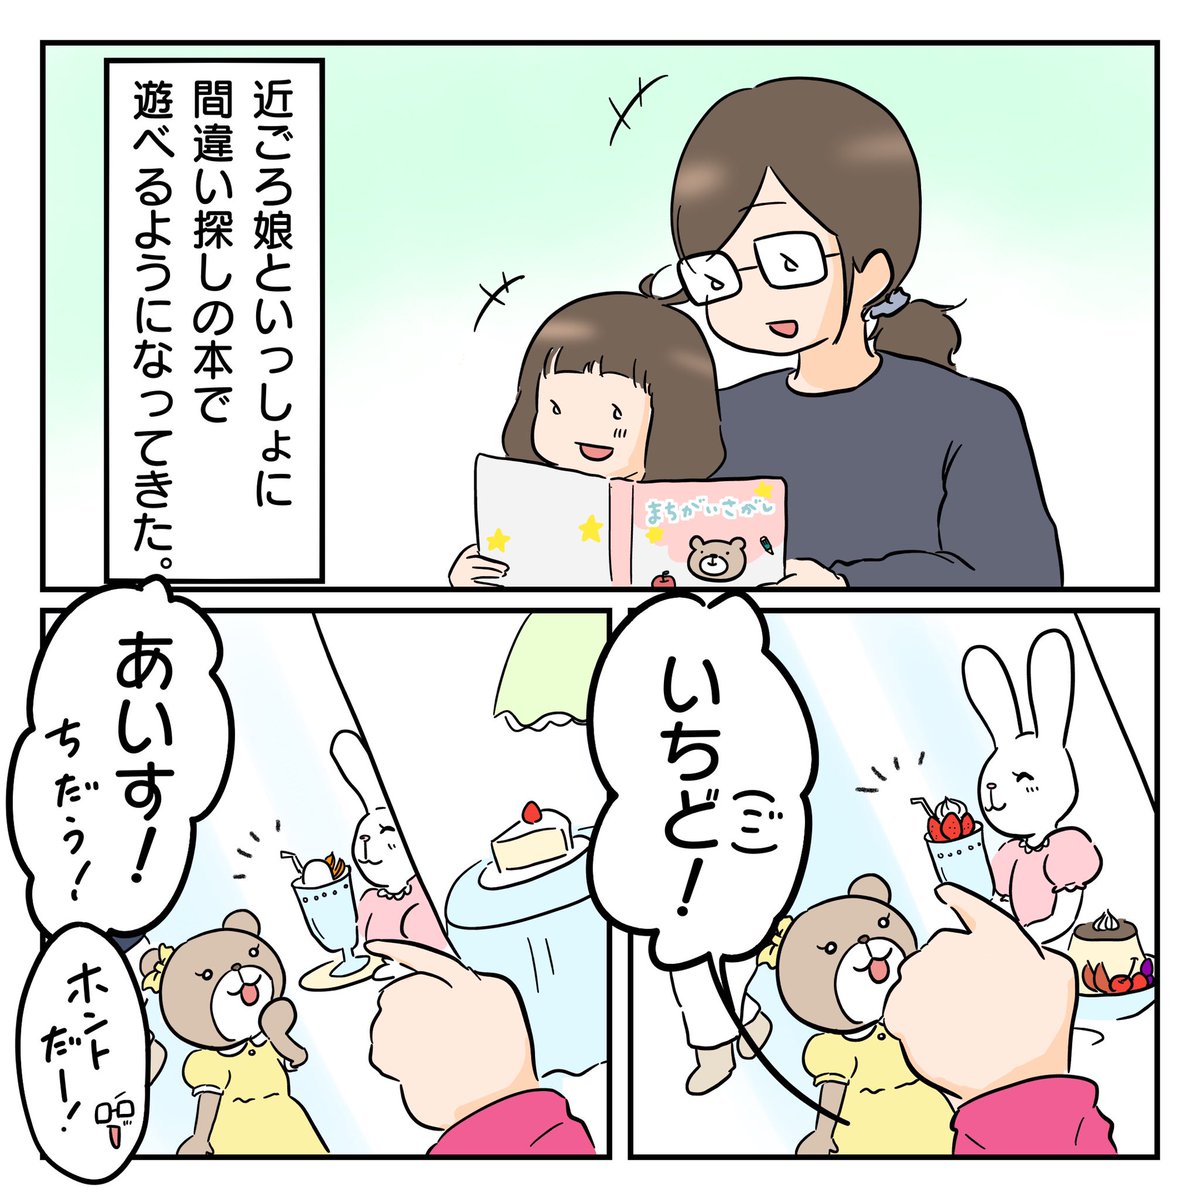 間違いの数間違っとる…!((((;゜Д゜)))))))←

#育児漫画 
#2歳児 